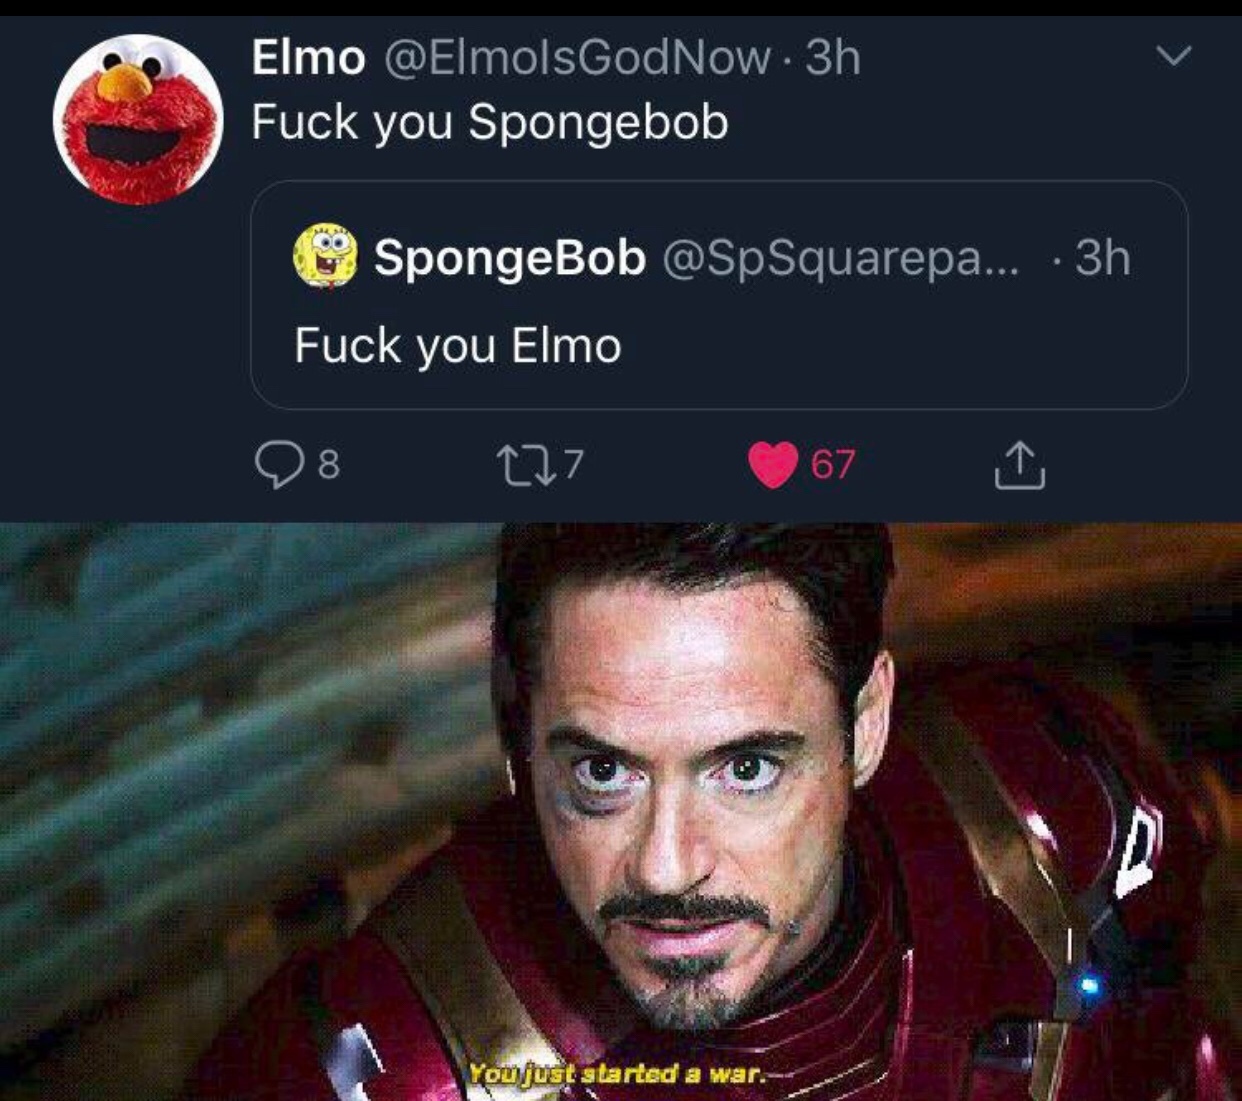 Elmo would fuck sponge bob up - meme